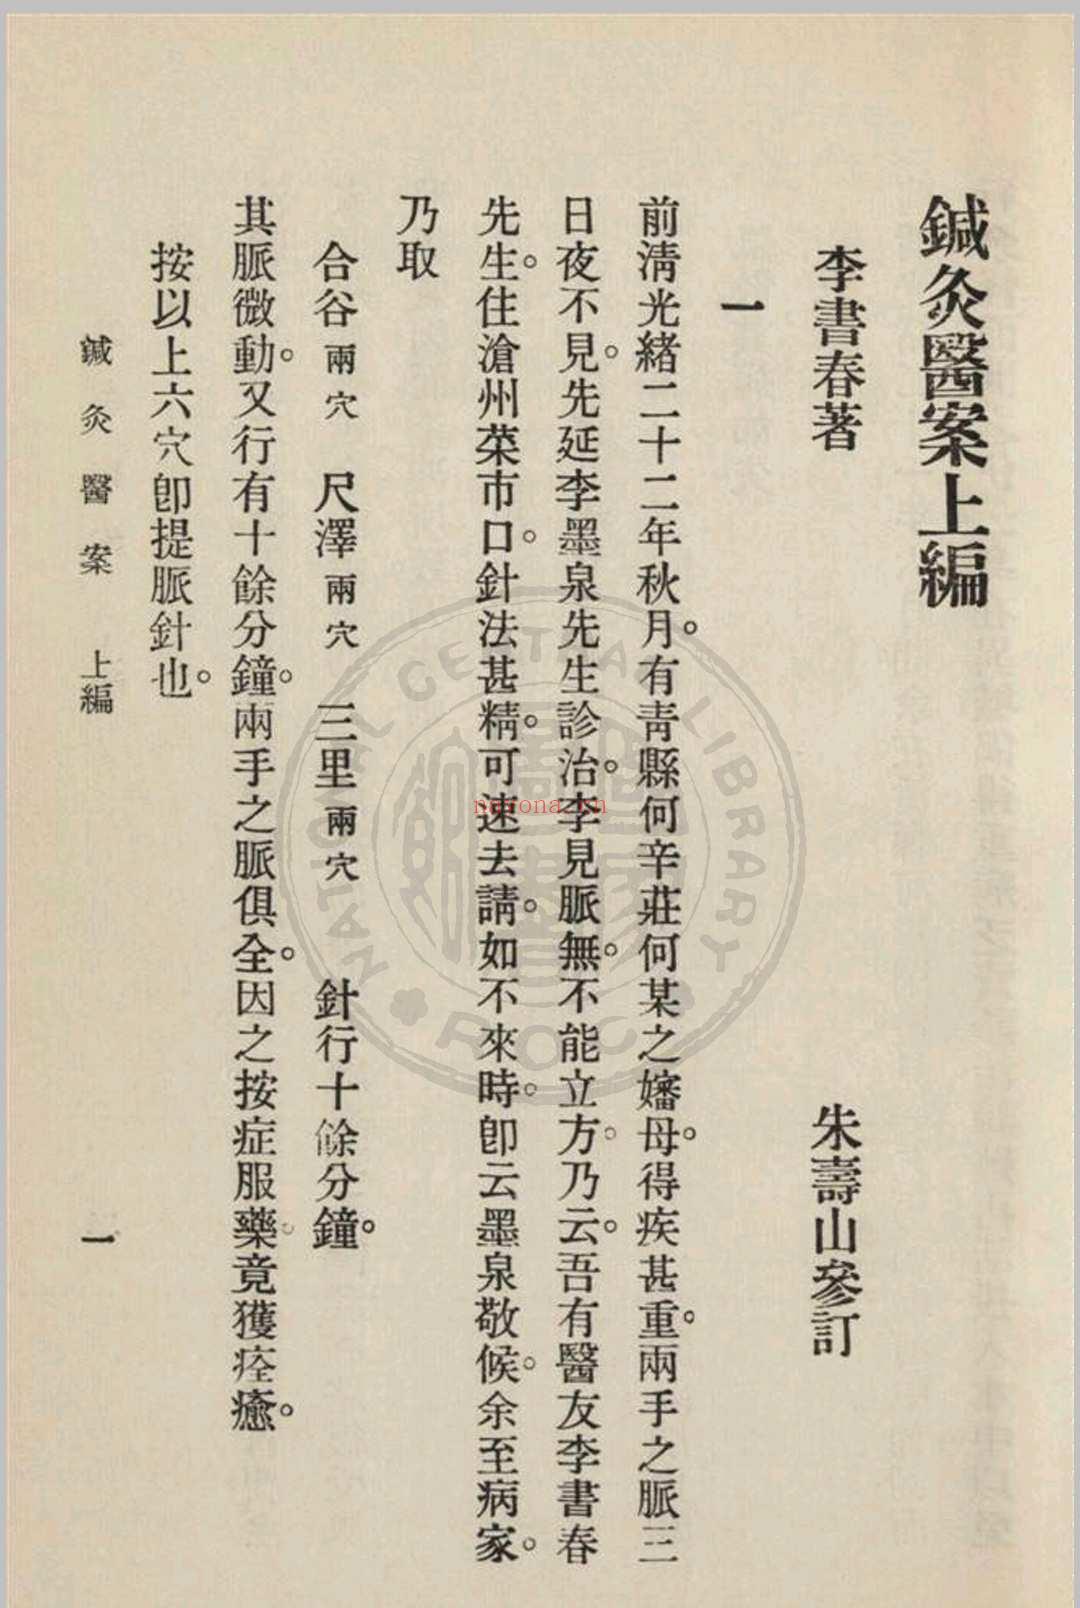 针灸医案 三编李书春撰  朱寿山参订 1936年